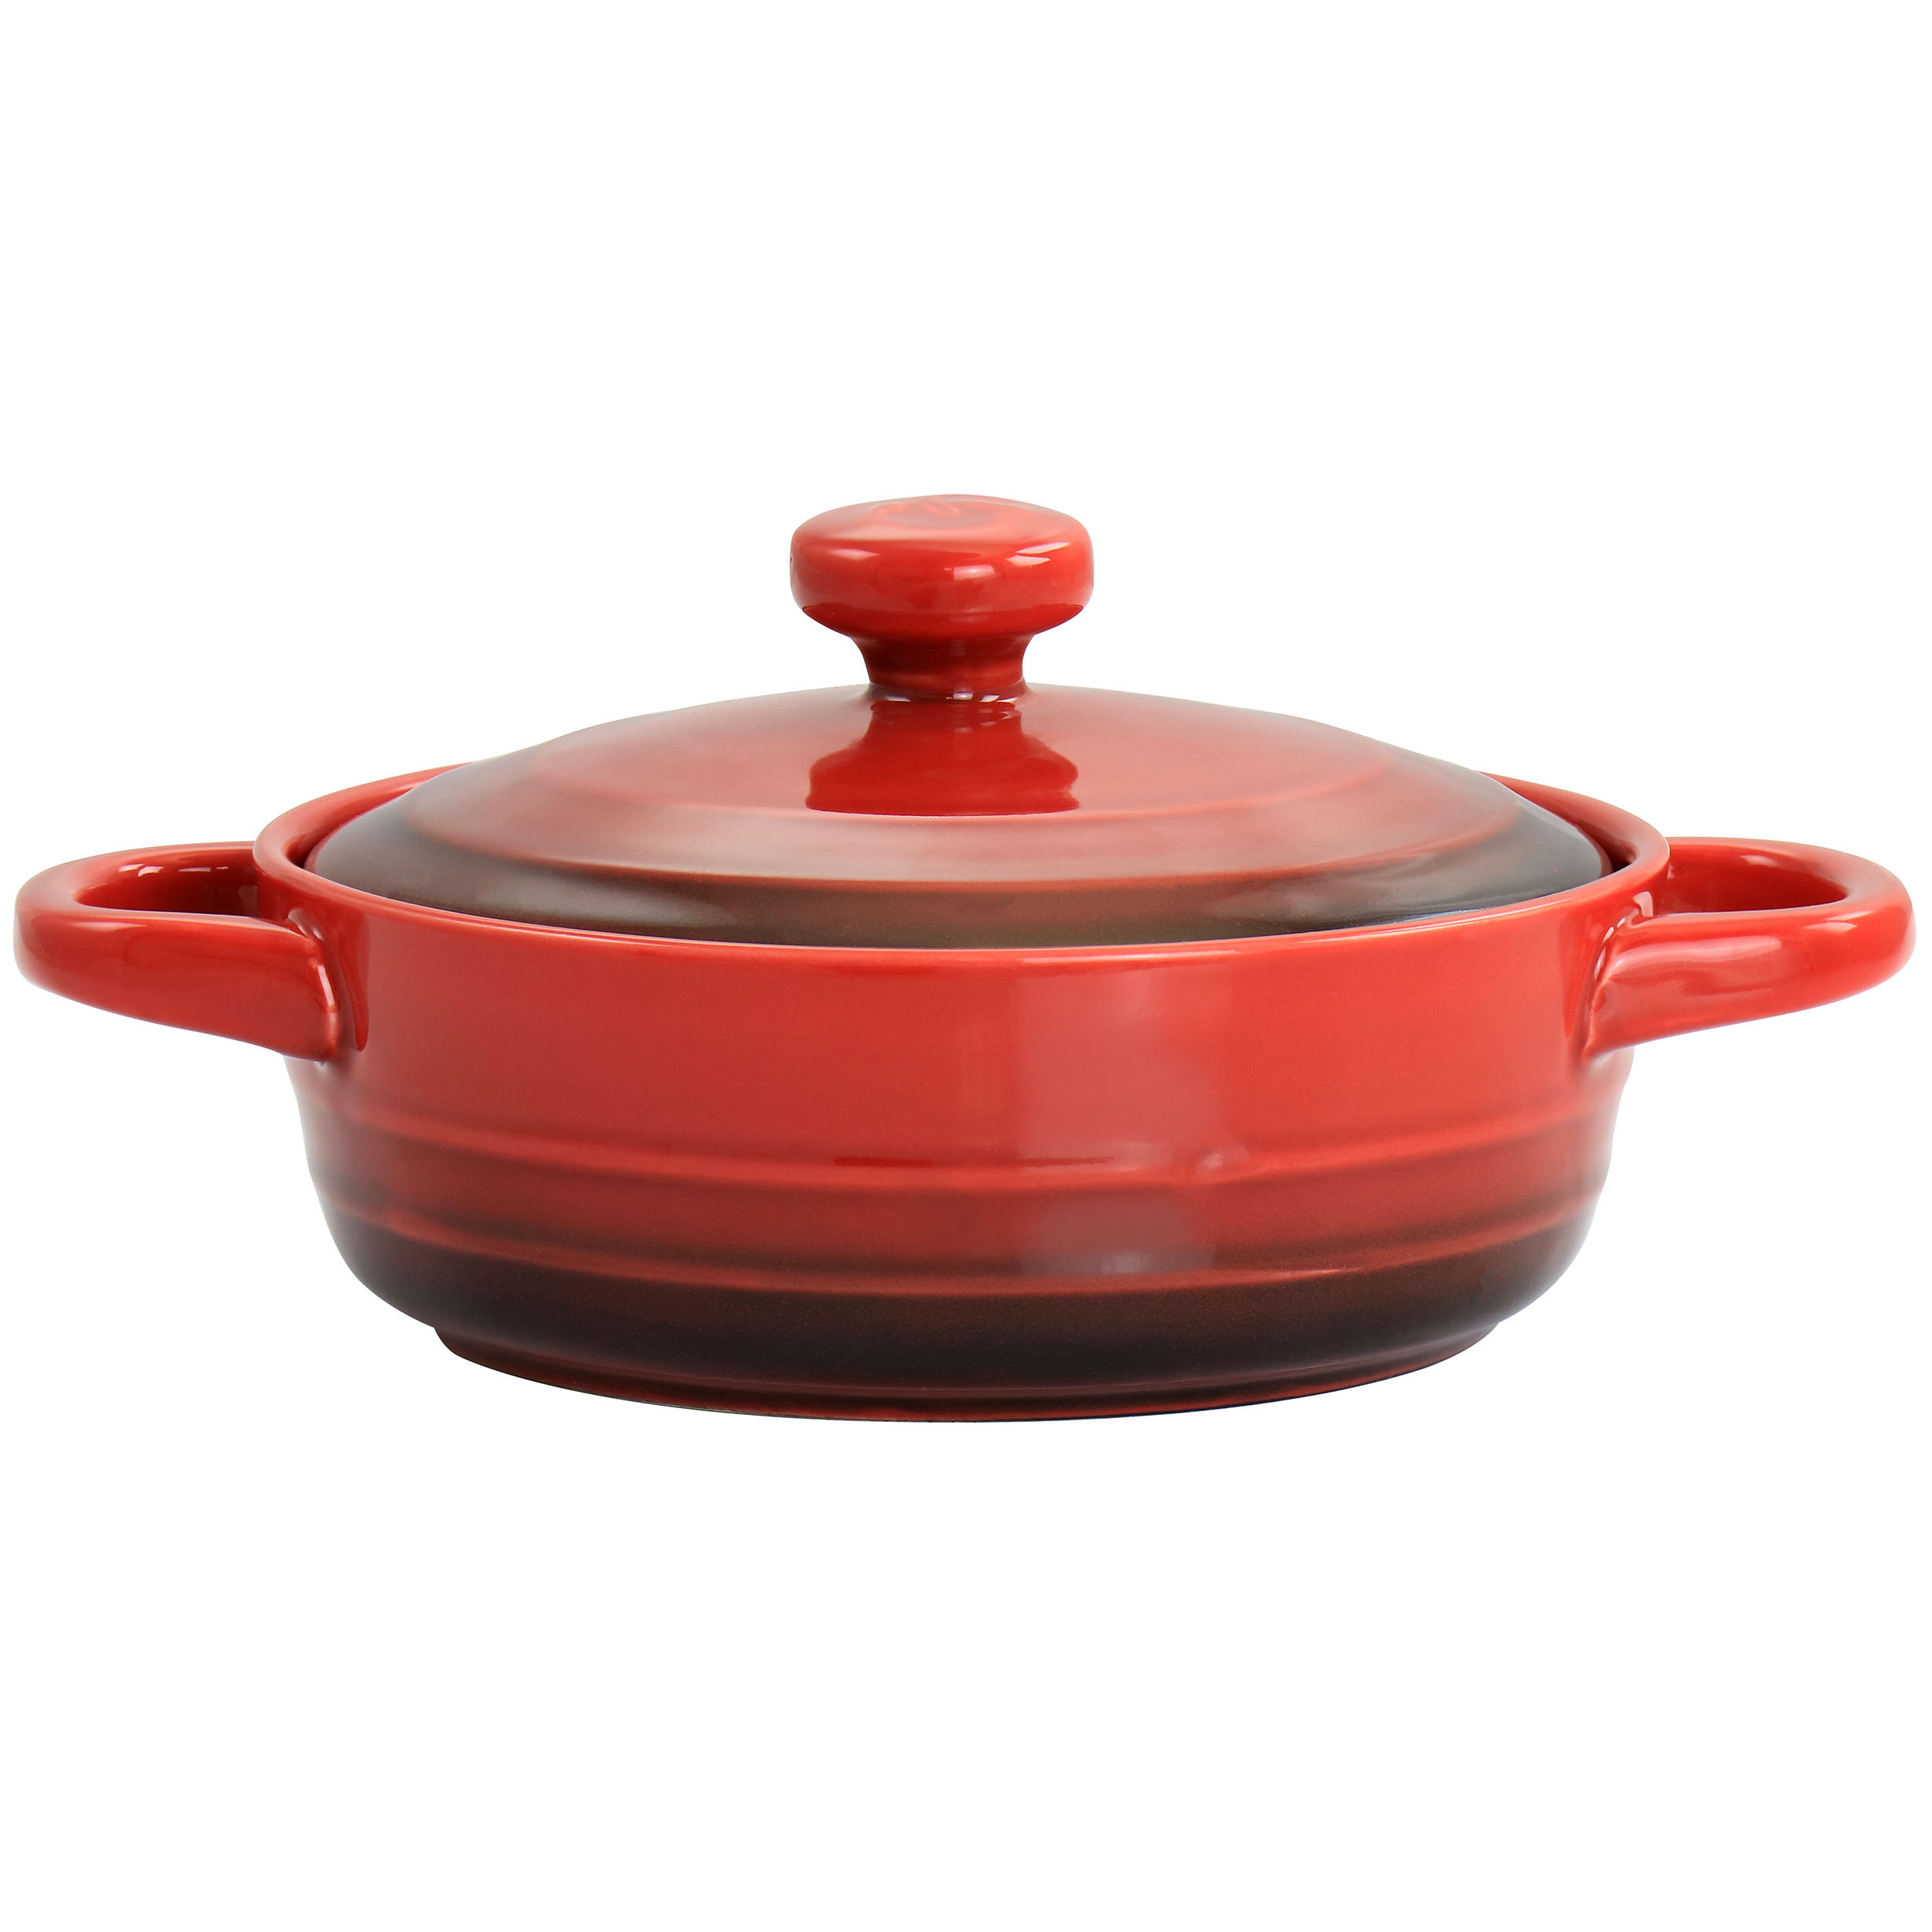 Crock-pot 3 qt Enamel Cast Iron Sauce Pan w/Lid - Gradient Red